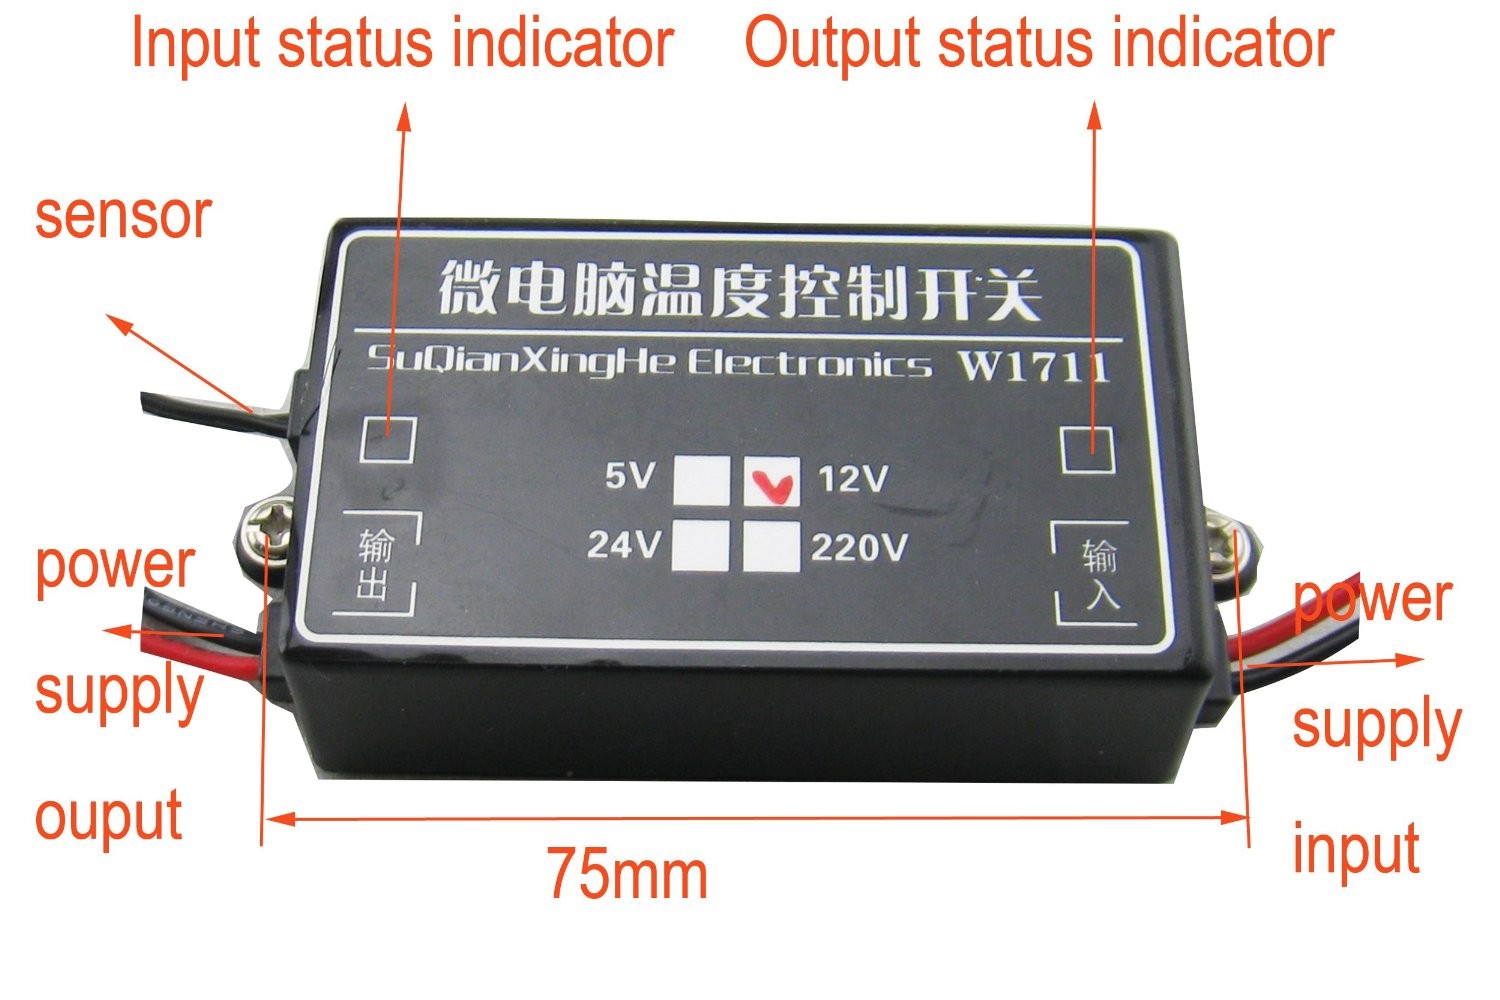 W1711 -15 až 70°C 12V Elektronický regulátor teploty (termostat) pro chlazení a vytápění